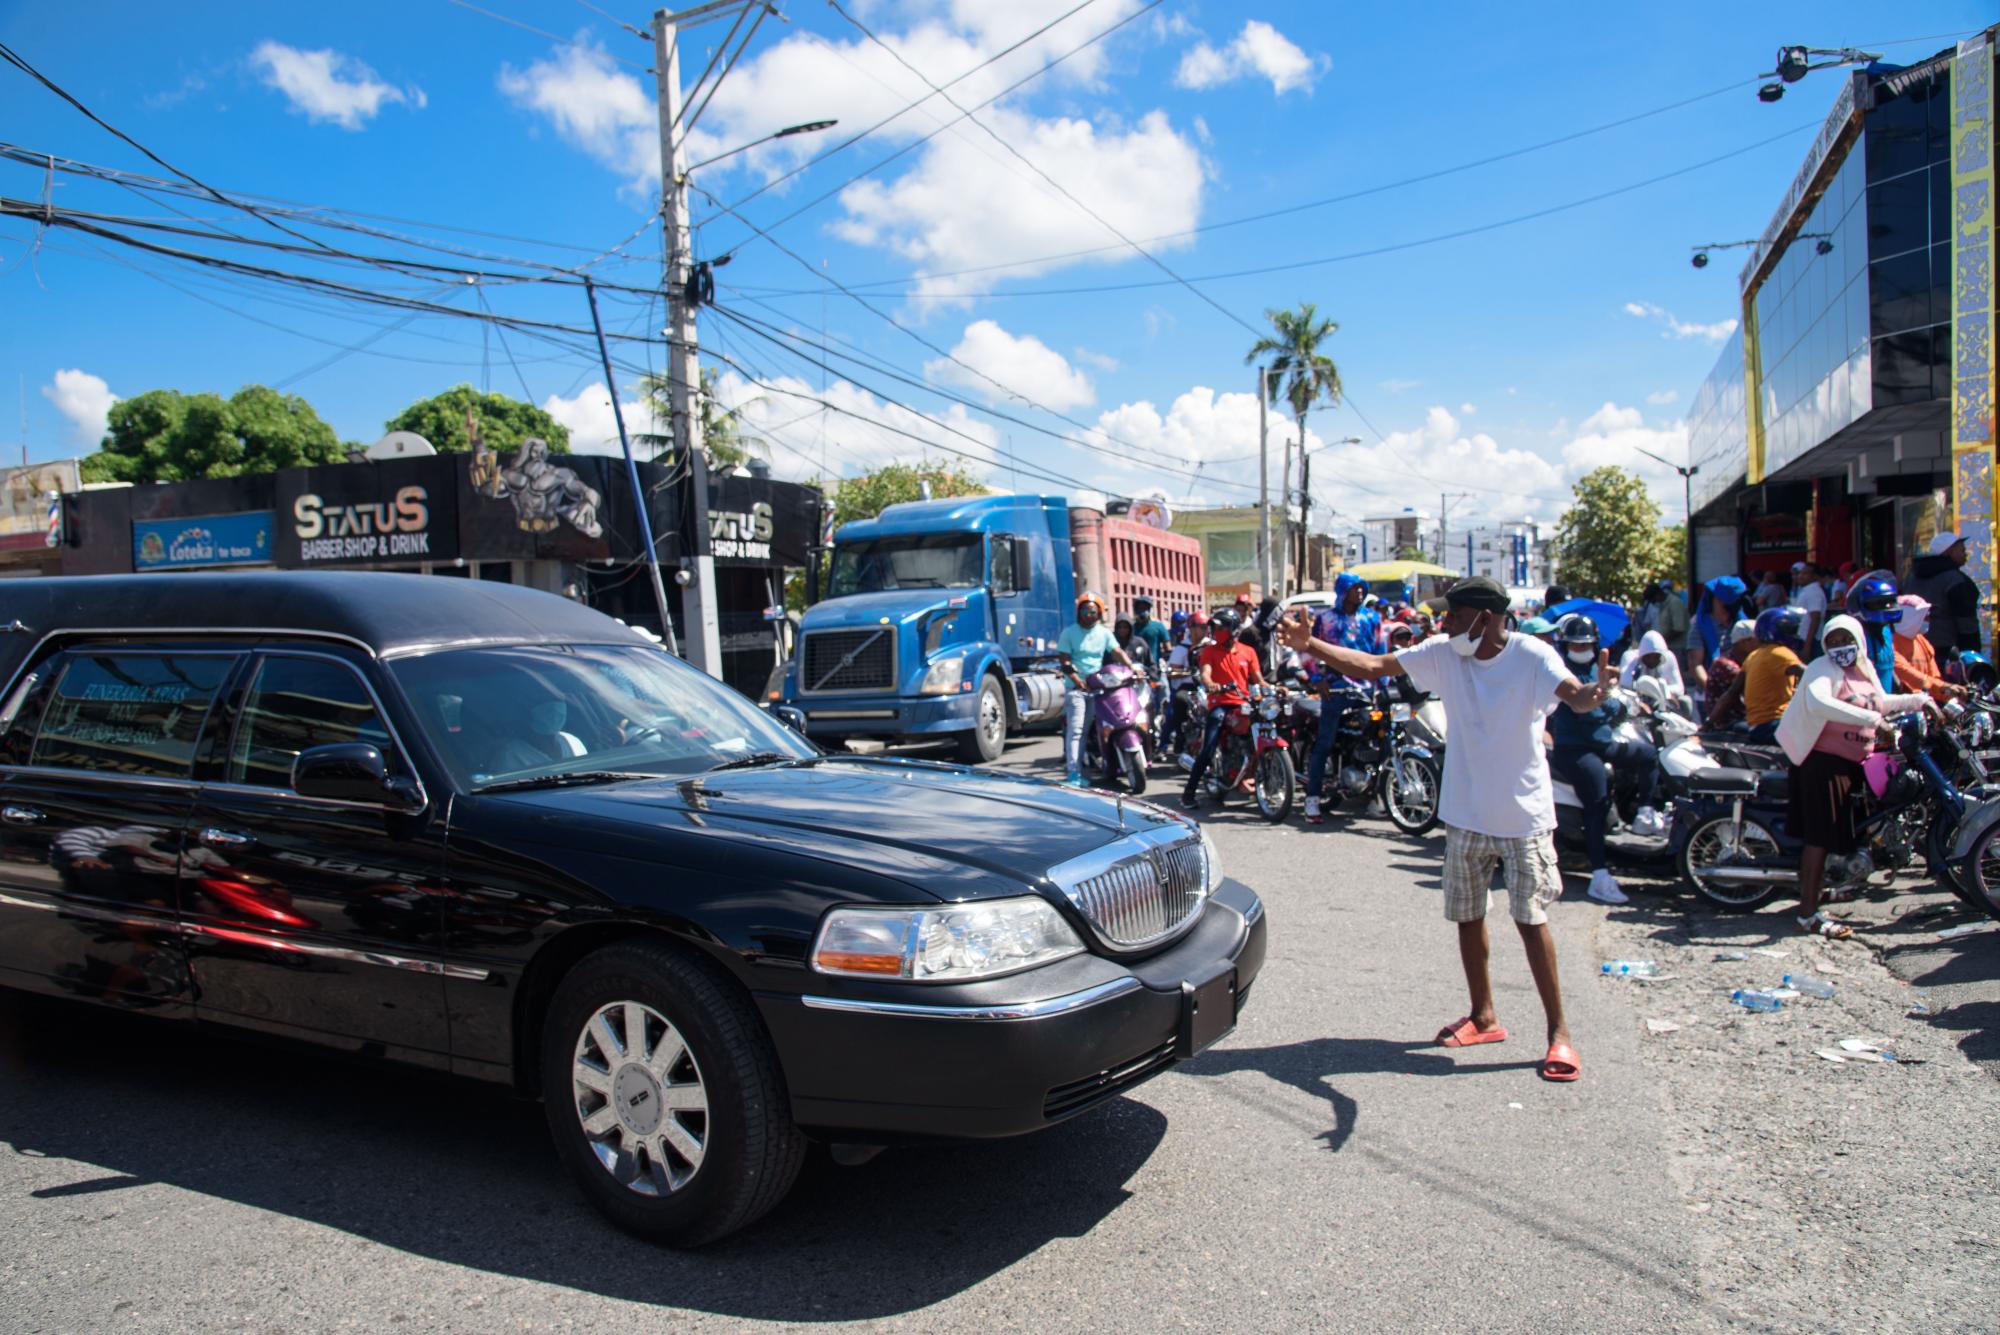 La calle Canela Mota con Máximo Gómez tiene varios días ocupadas por las motocicletas, cuyos conductores tratan de obtener el documento. (Massiel Beco)